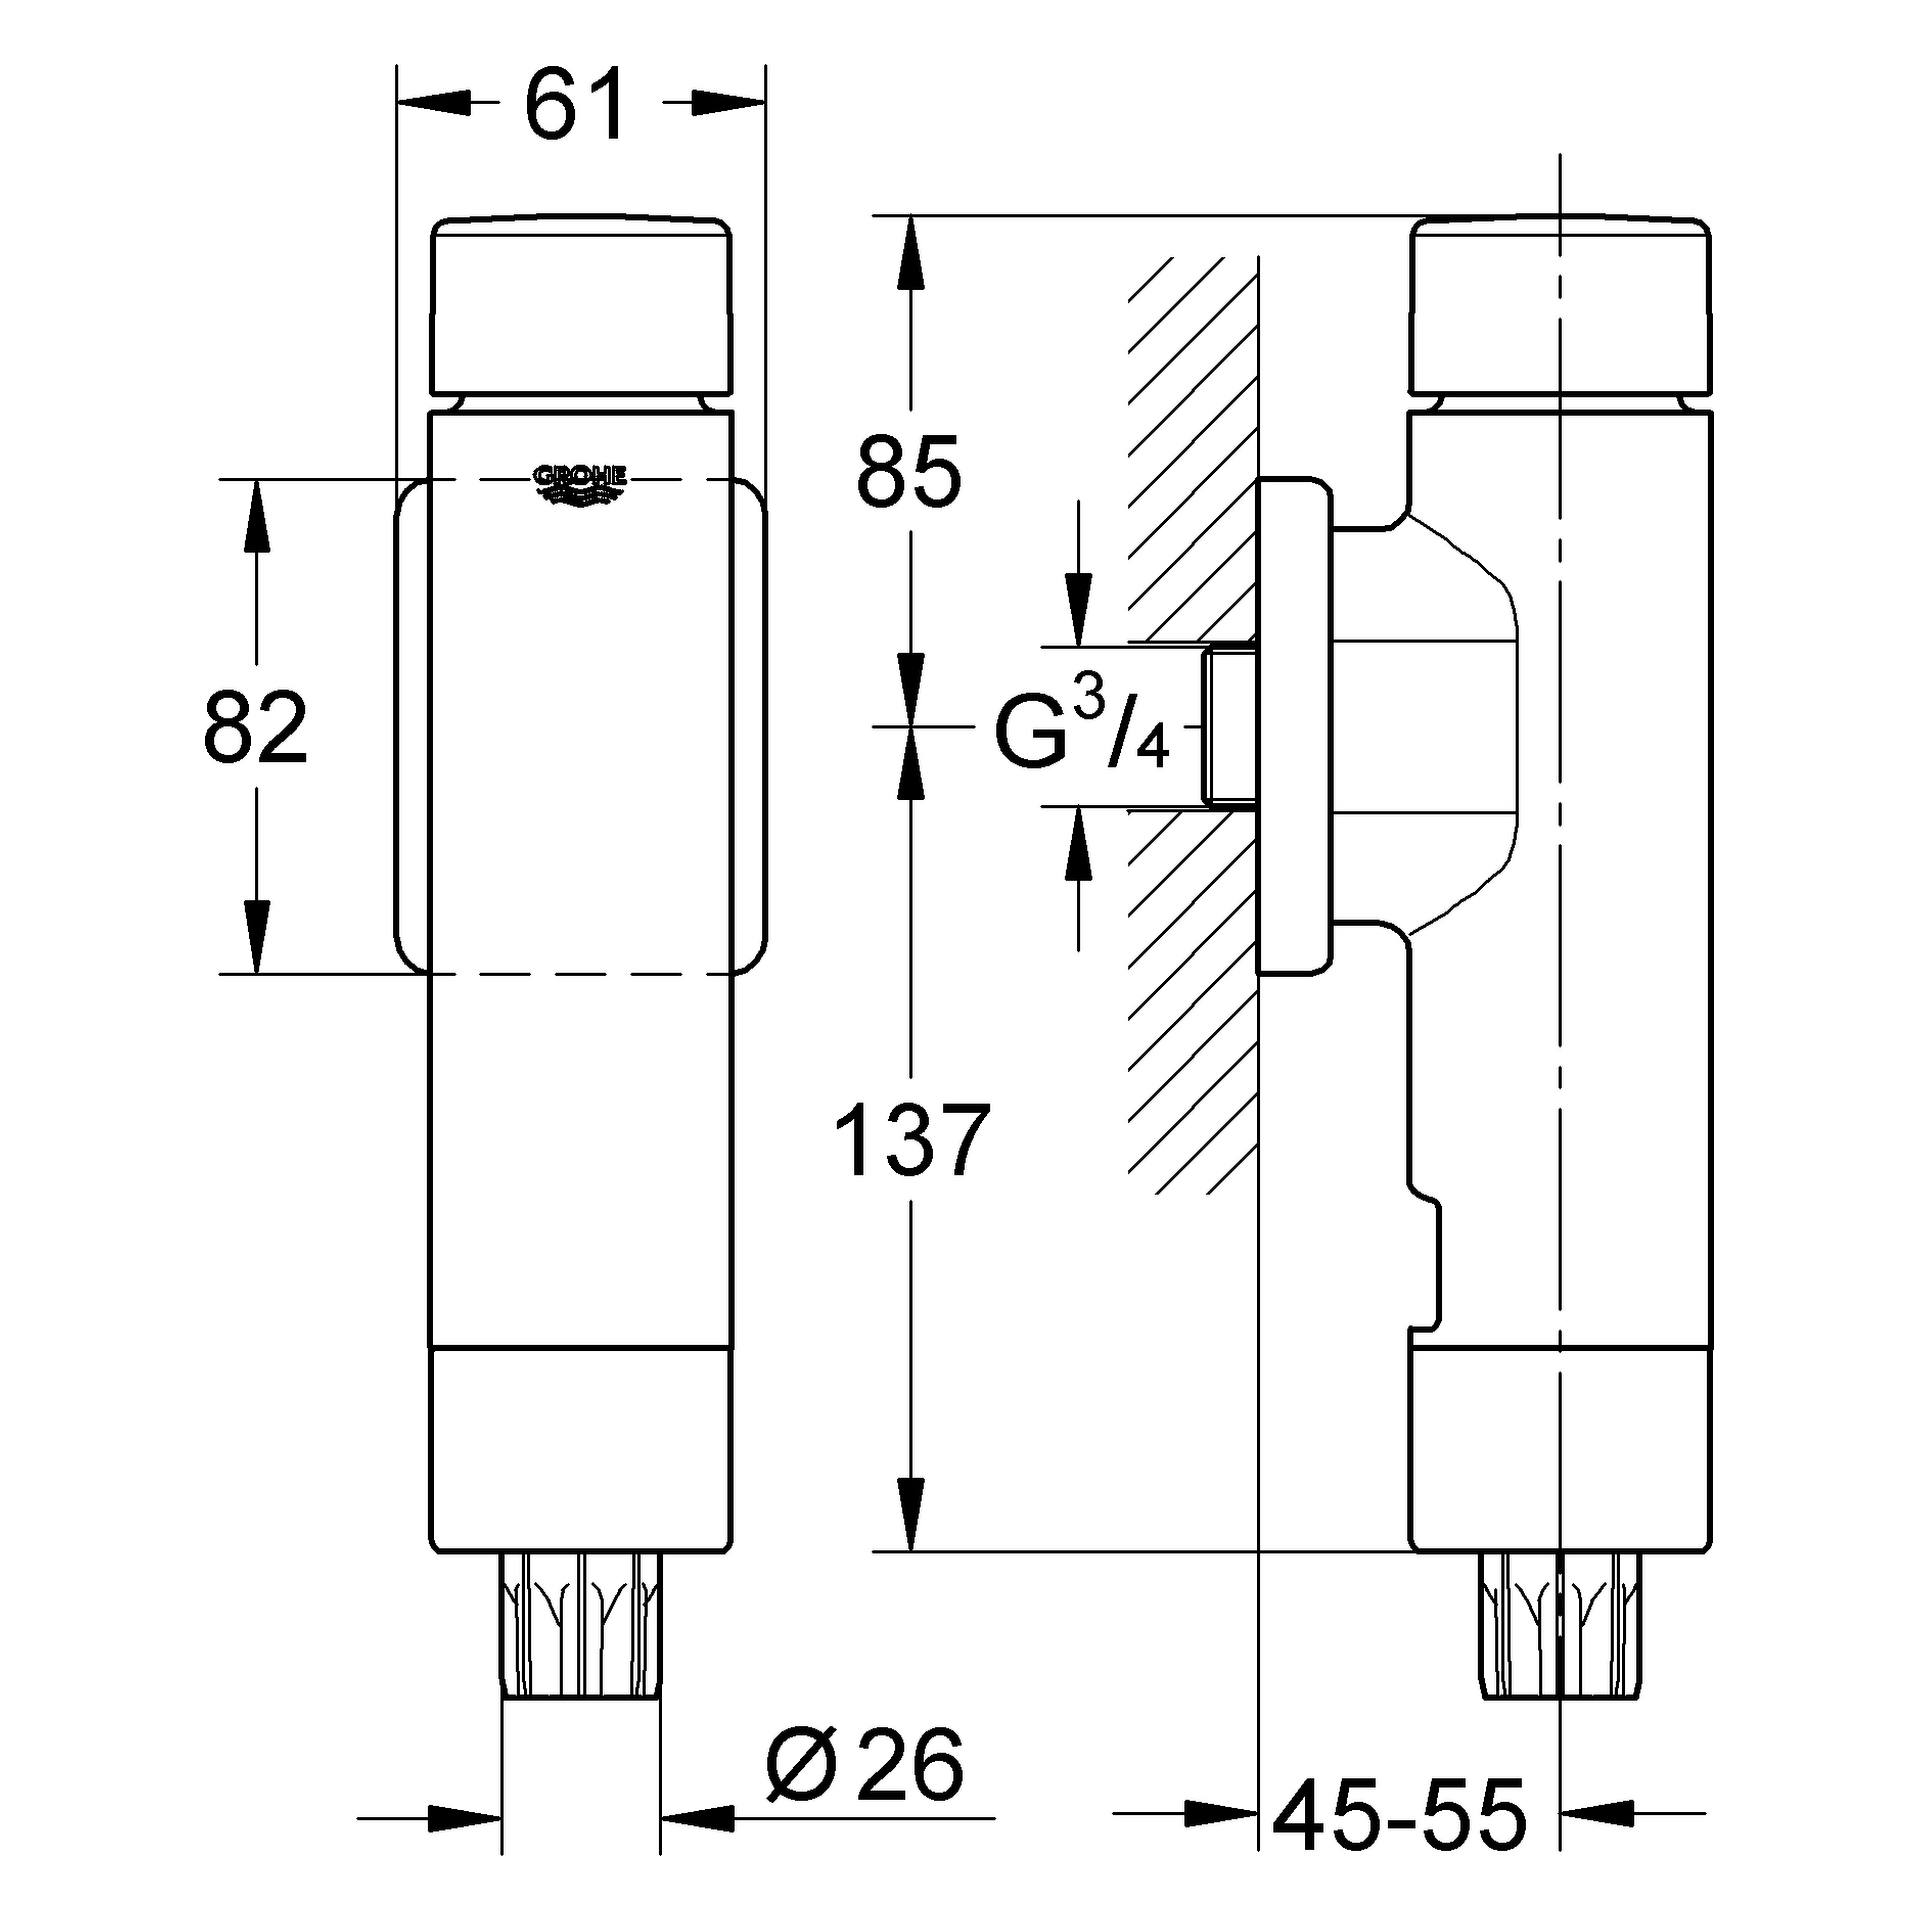 WC-Druckspüler Rondo A.S. 37349, DN 20, integrierte Vorabsperrung, für Flach- und Tiefspül-WC, chrom